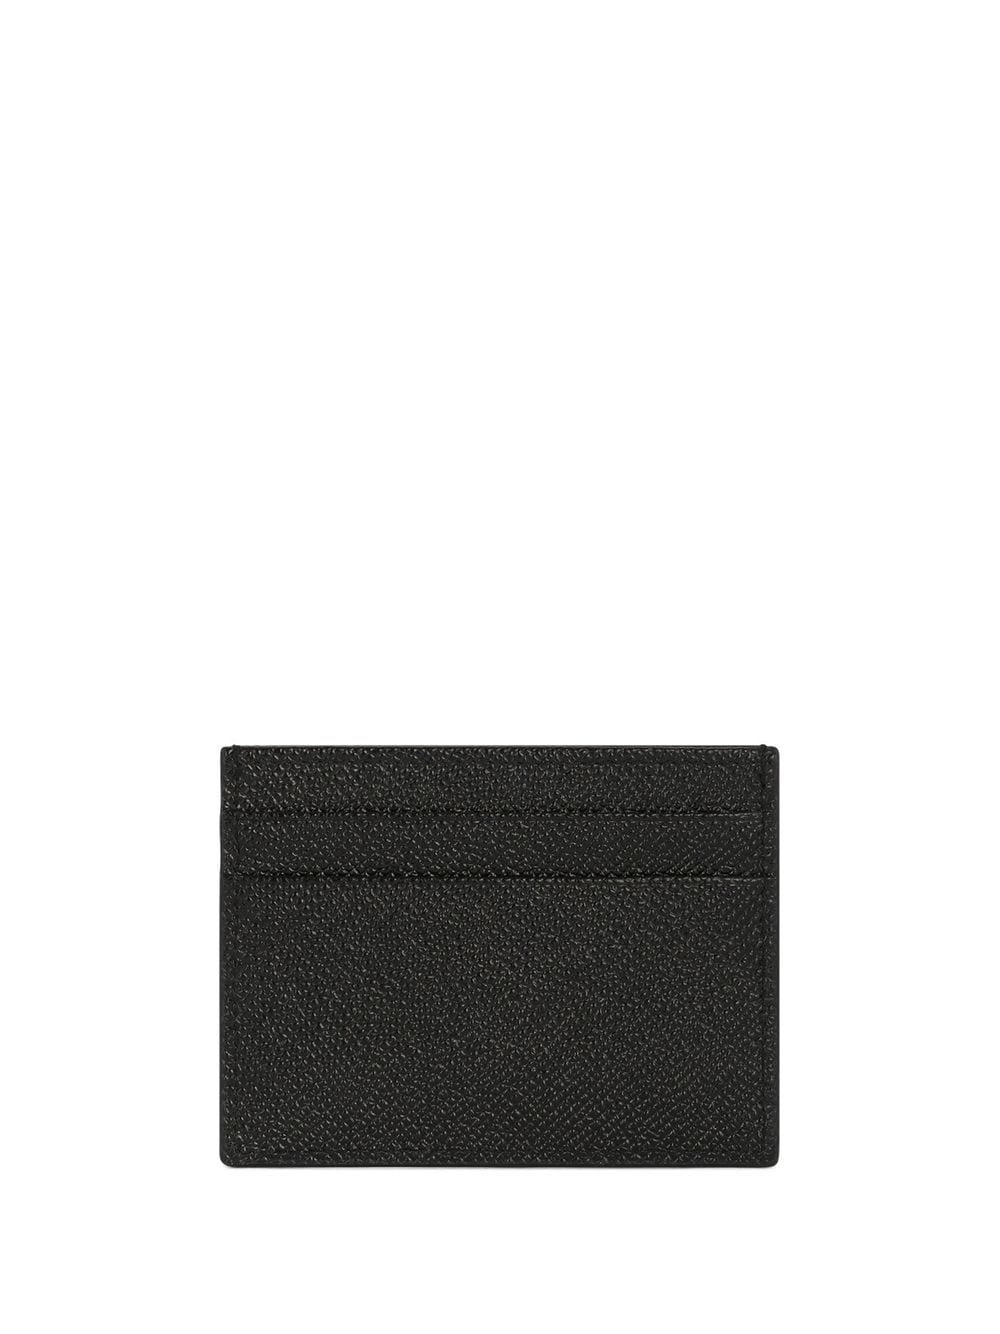 Logo-tag leather card holder<BR/><BR/><BR/>